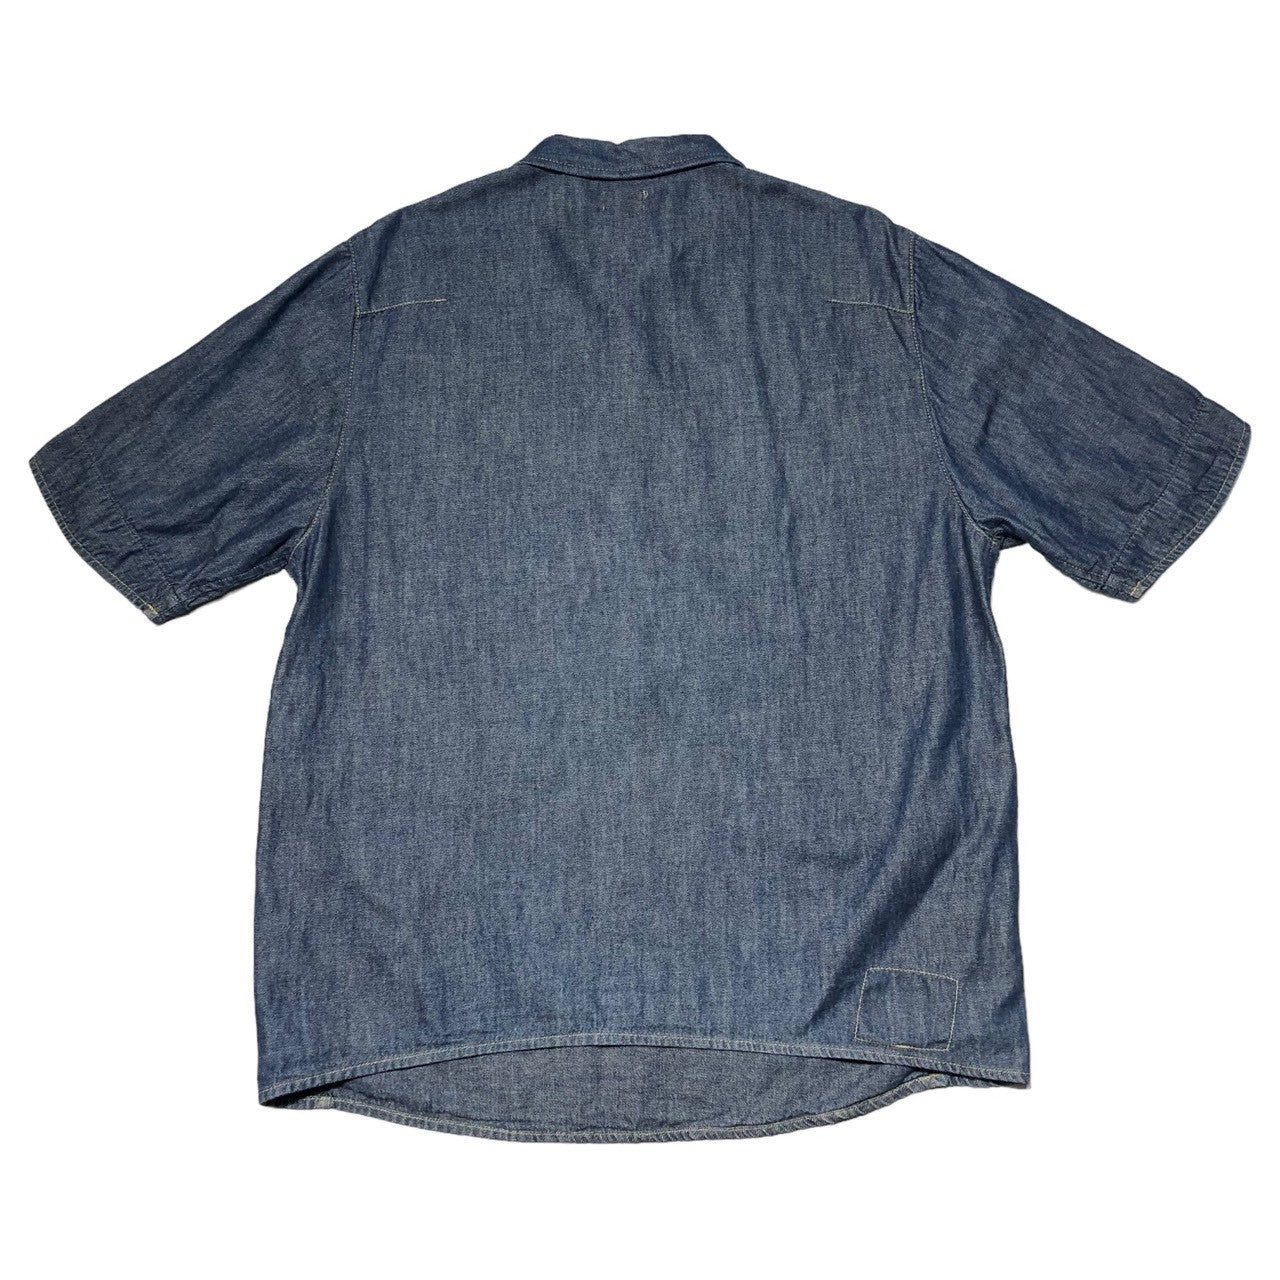 Levi's Engineered Jeans(リーバイスエンジニアドジーンズ) 00's Pullover S/S denim shirt プルオーバー 半袖 デニム シャツ 60101-0535 XL インディゴ 2000年